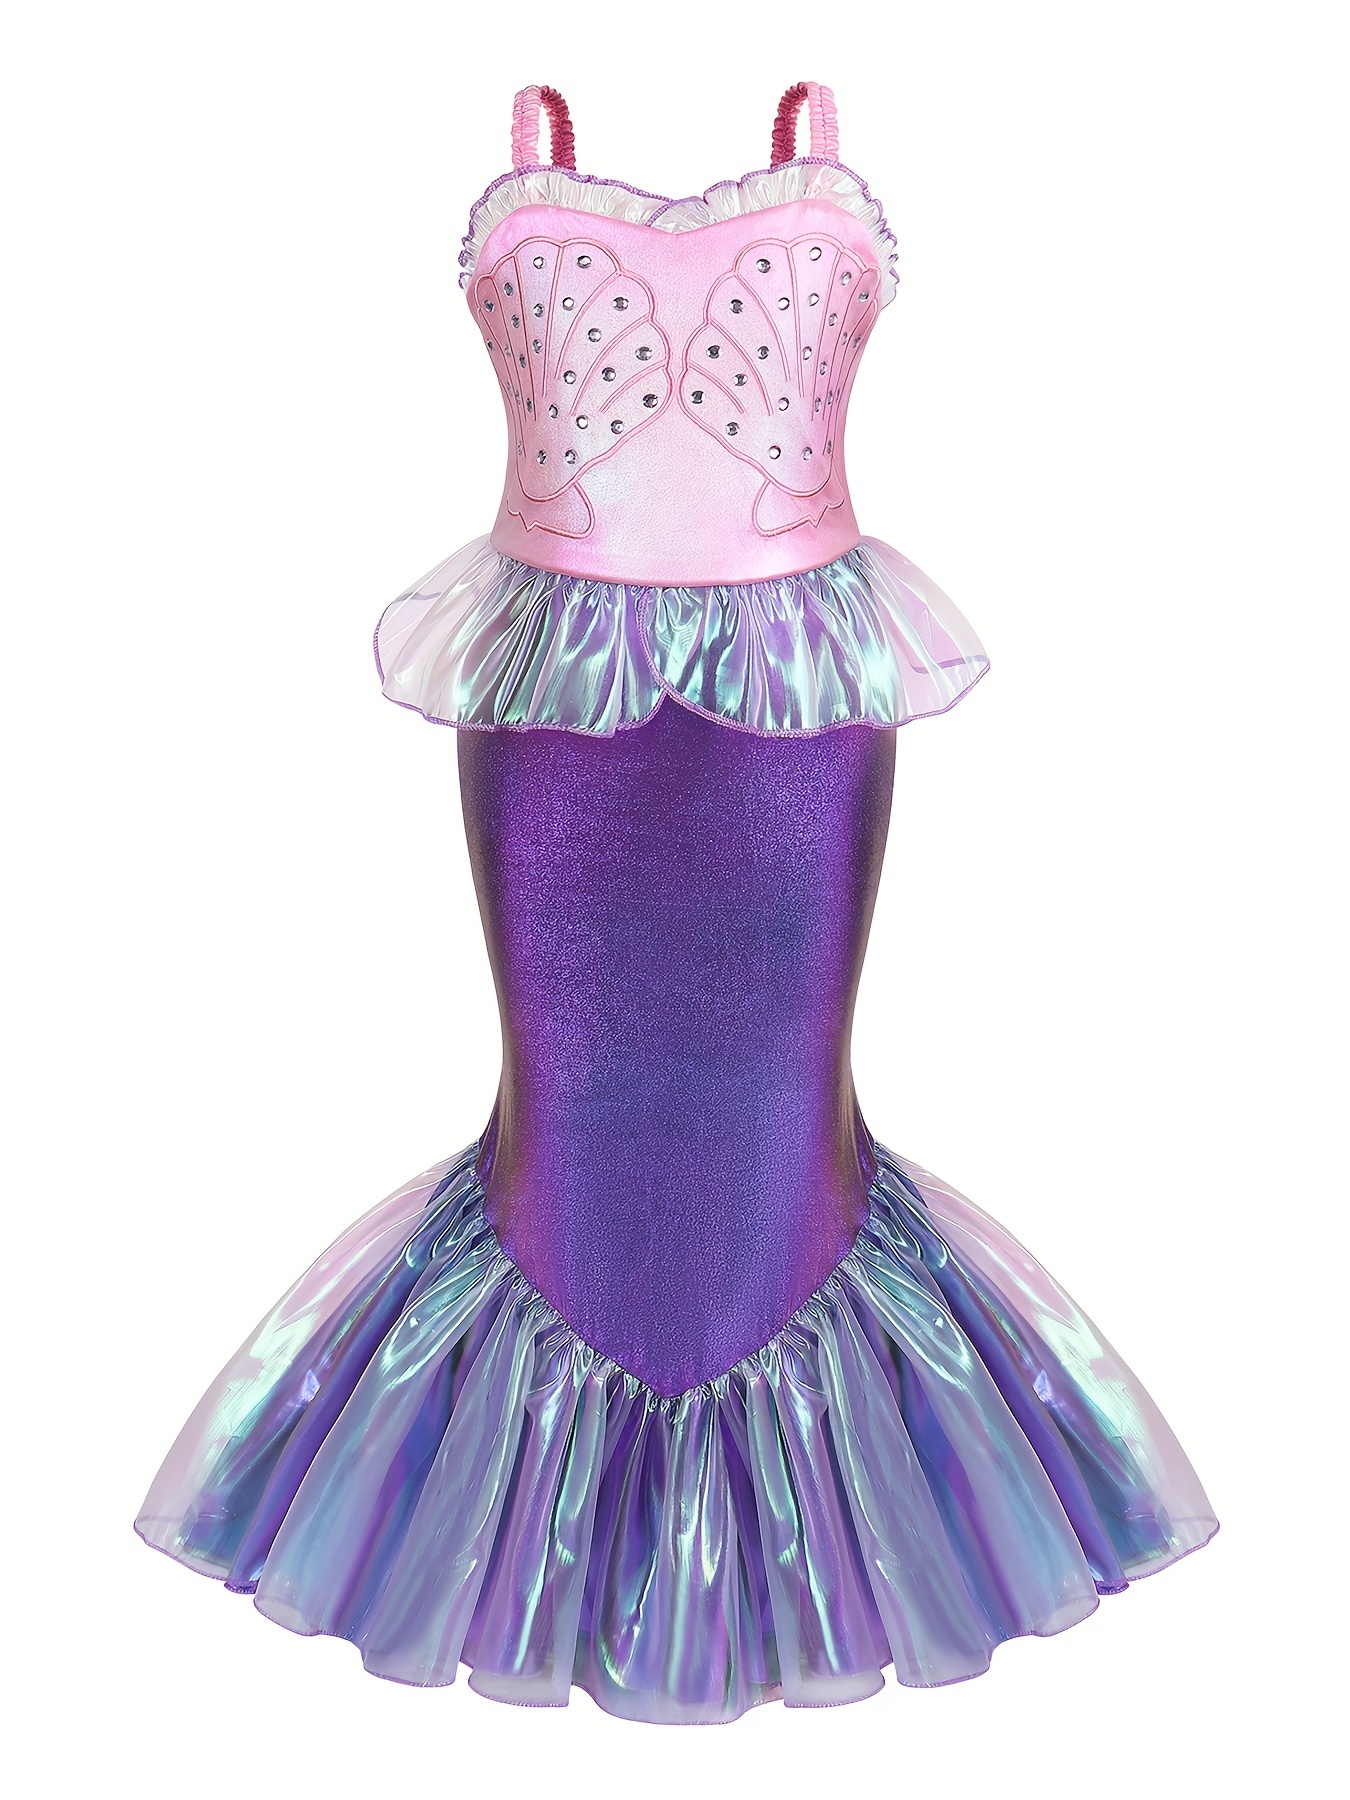 Disfraz de princesa sirena para niña; incluye peluca roja de sirena,  corona, varita mágica y guantes